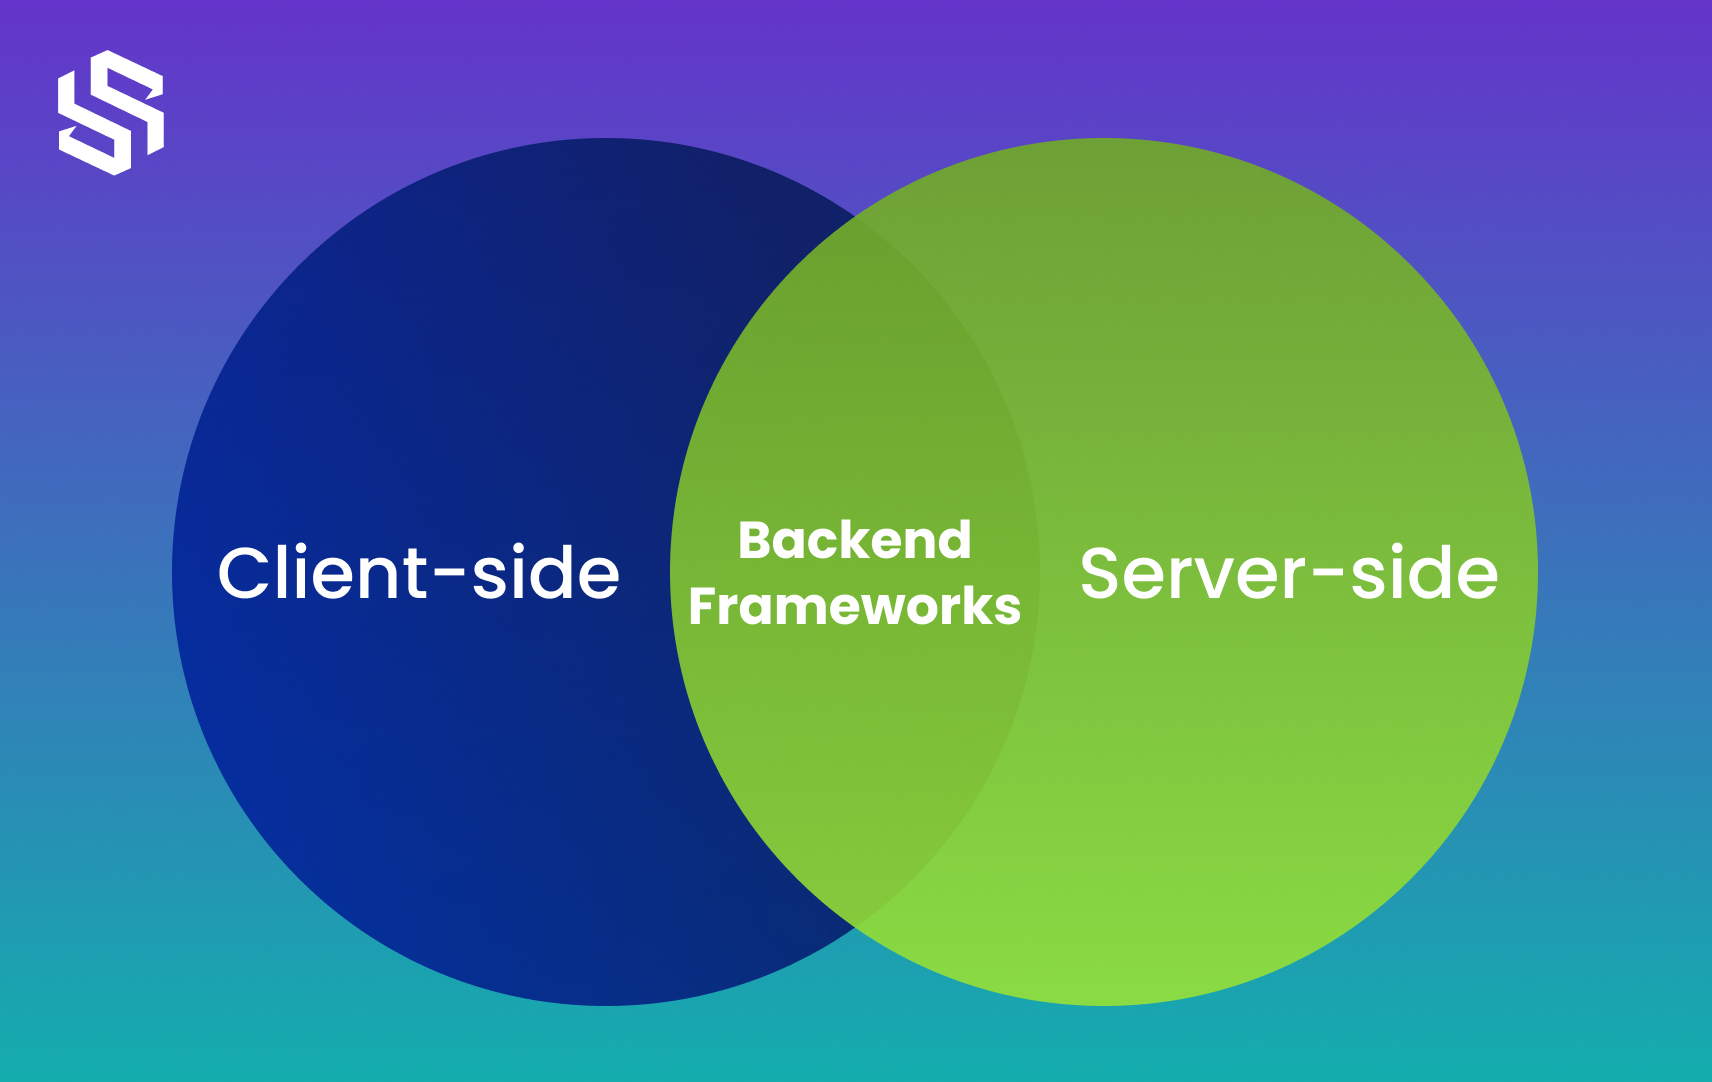 Types of Backend Frameworks